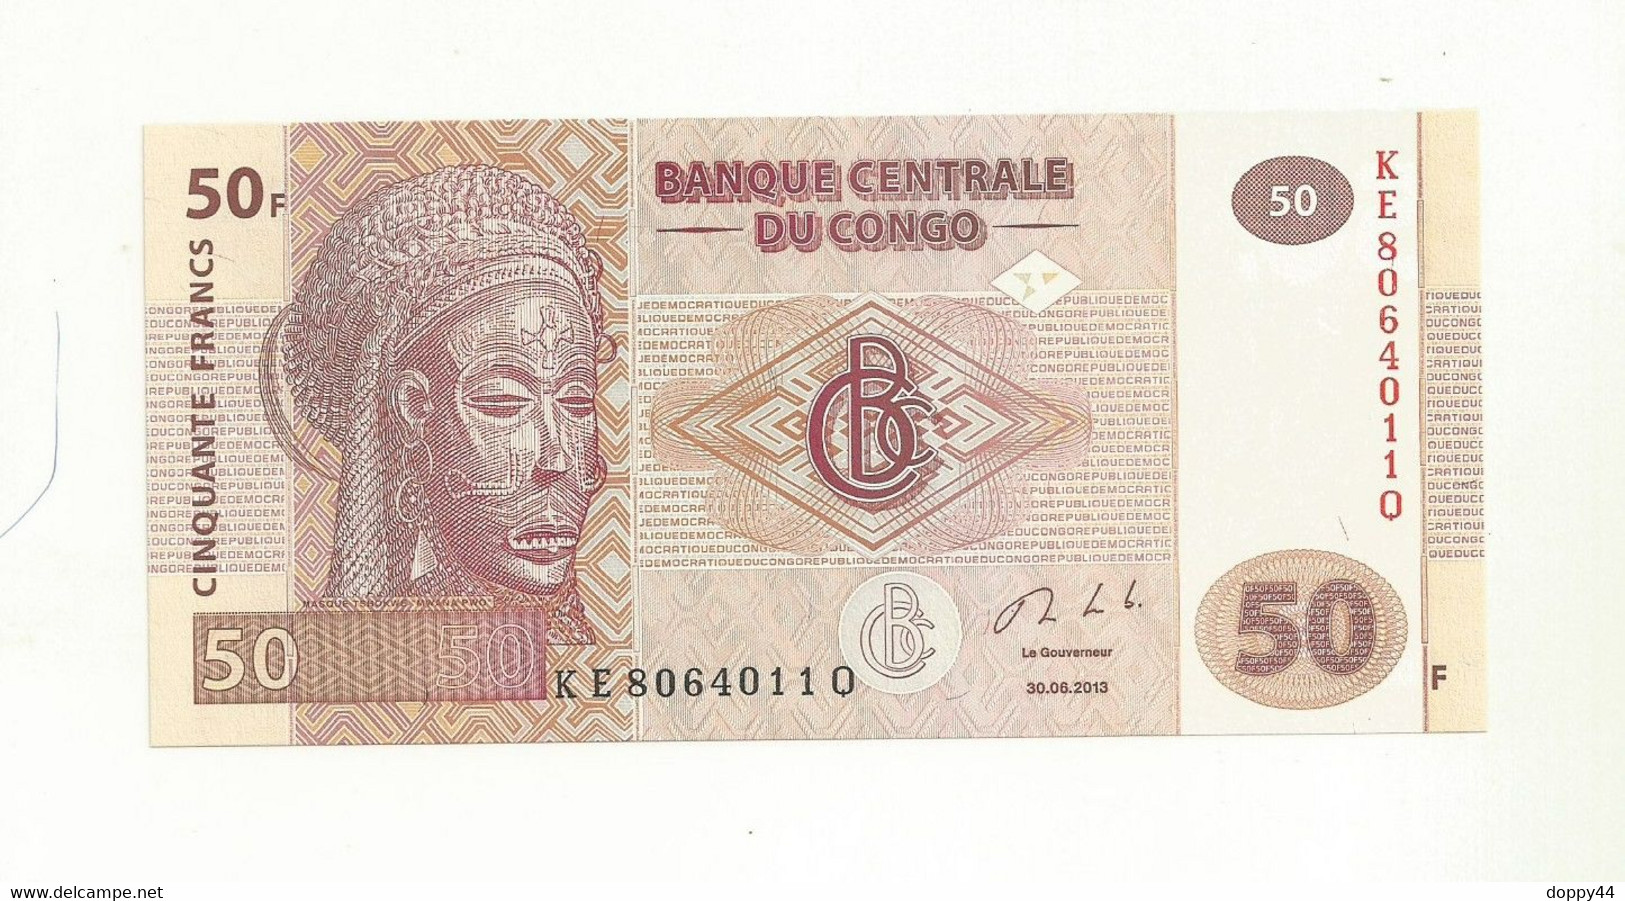 BILLET NEUF BANQUE CENTRALE DU CONGO 50 FRANCS EMIS EN 2013 SUPERBE. - República Del Congo (Congo Brazzaville)